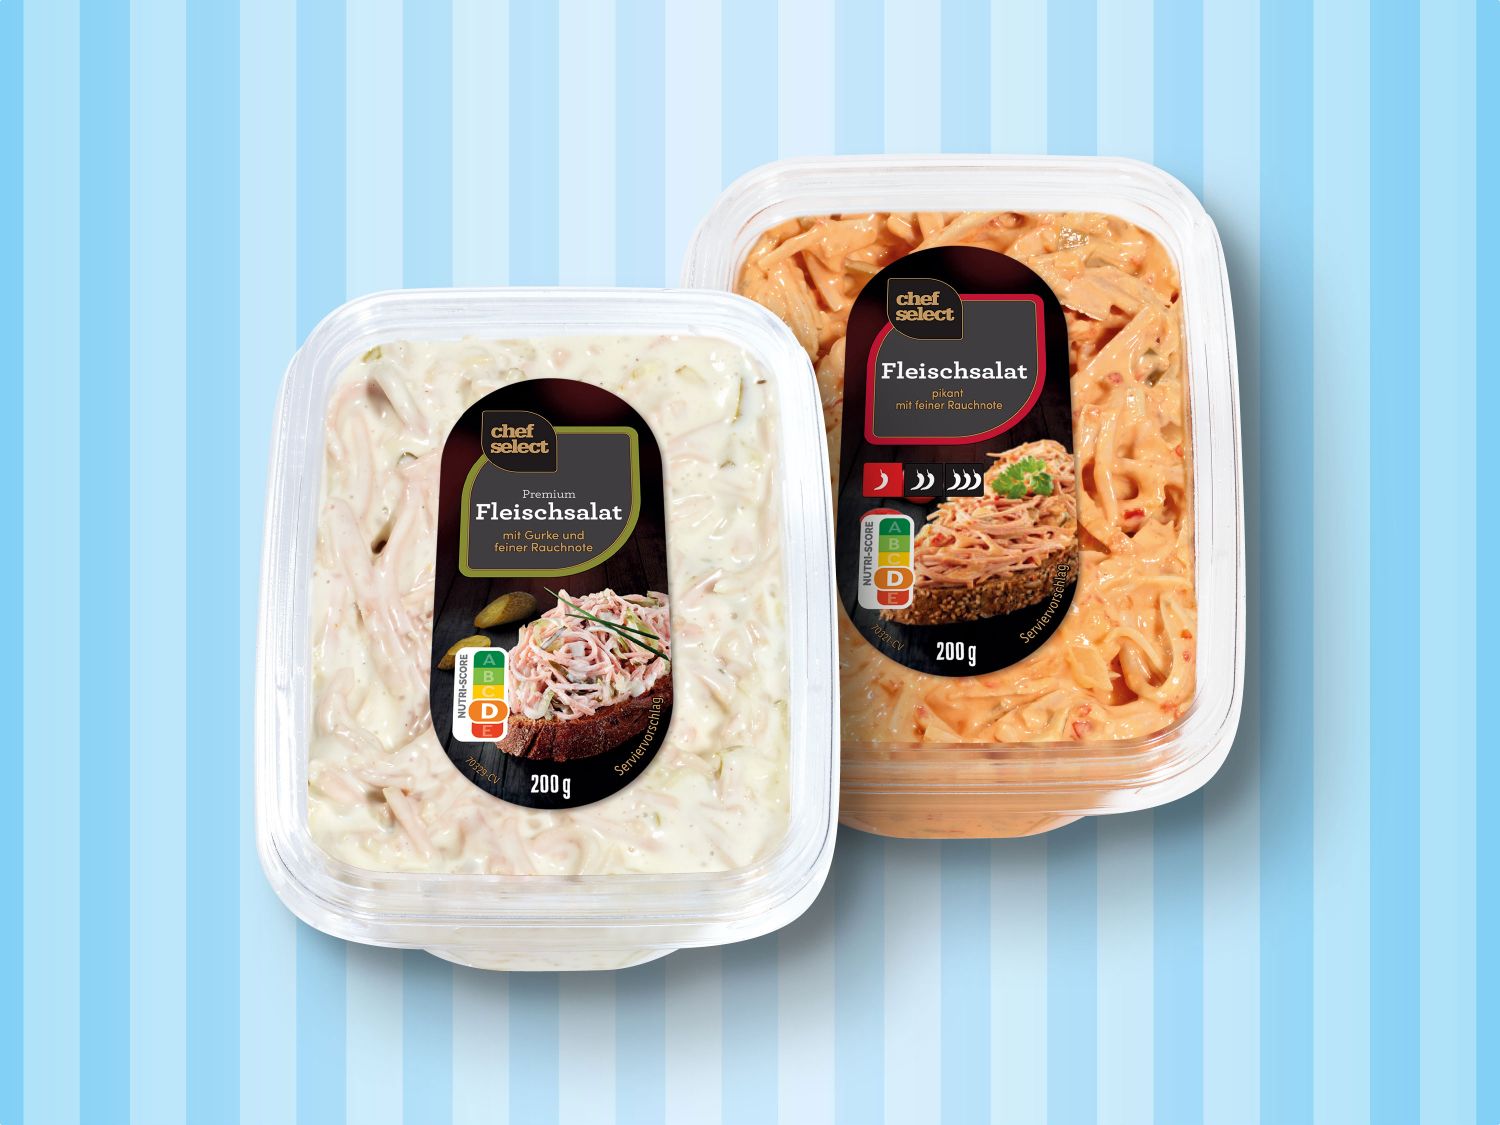 Chef Select Premium Fleischsalat - Deutschland Lidl